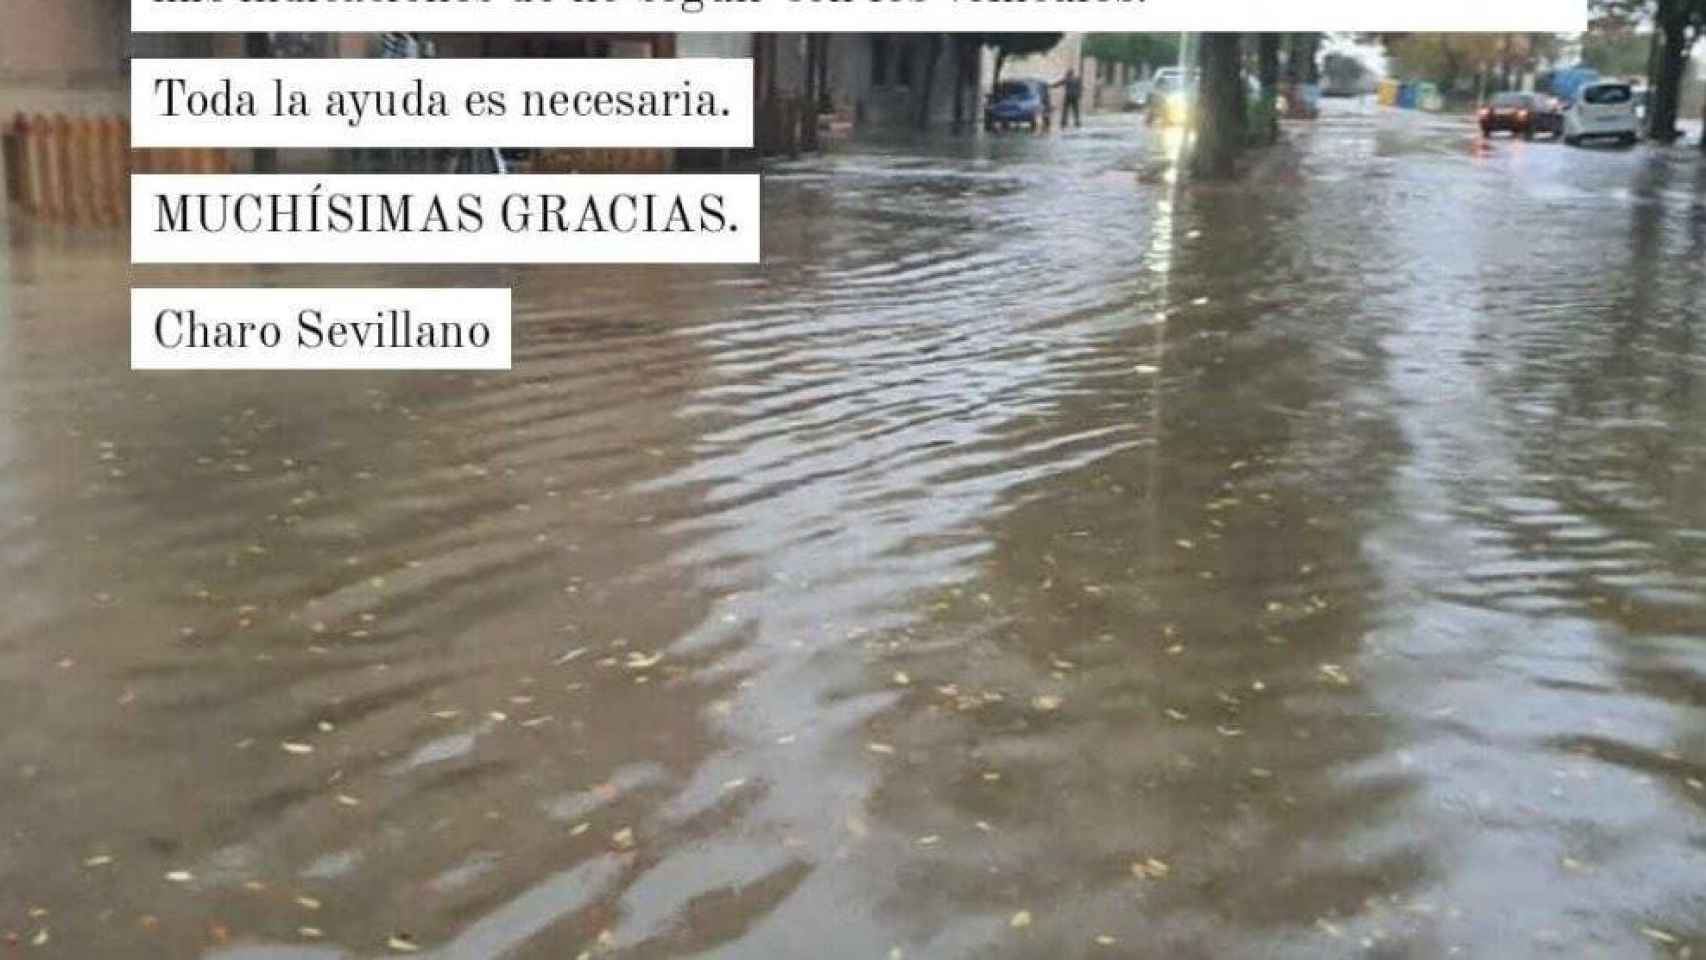 Imagen parcial de la publicación de la alcaldesa de San Clemente el pasado jueves en Twitter tras las fuertes lluvias registradas en la localidad